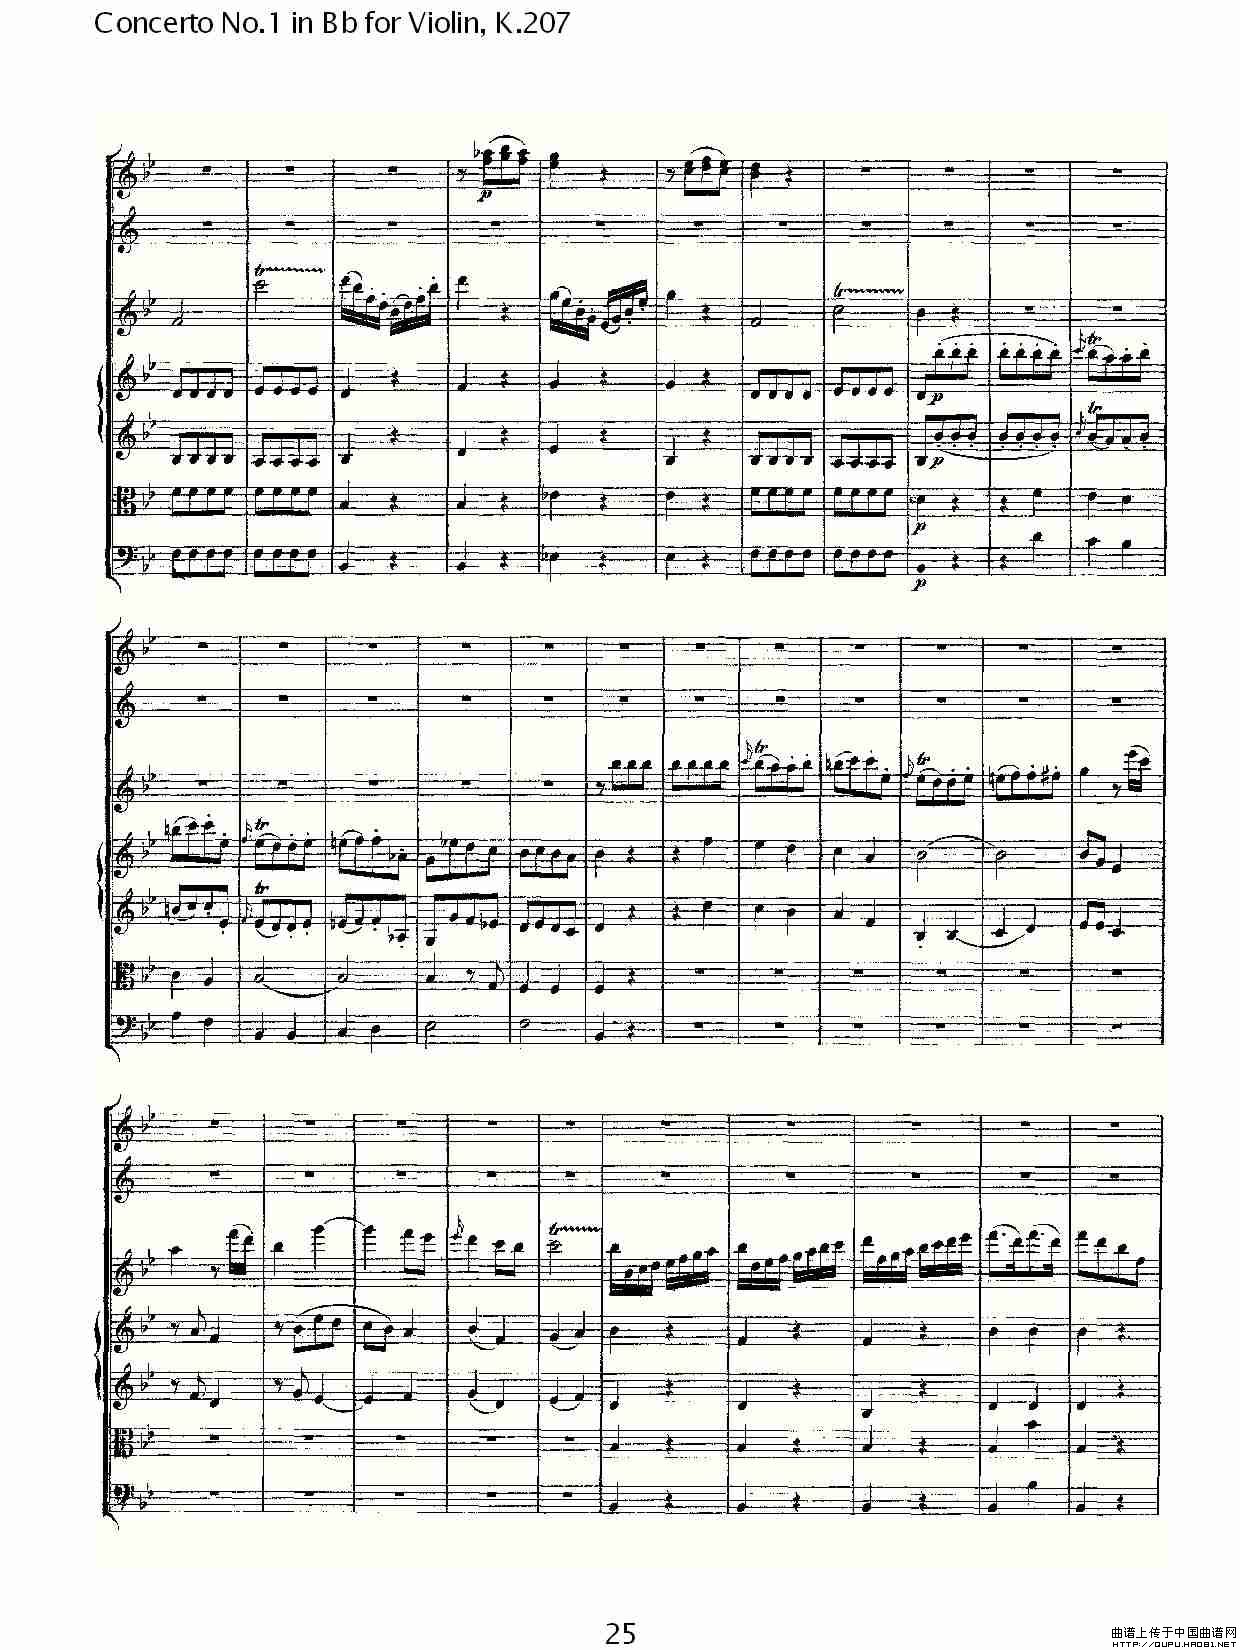 Concerto No.1 in Bb for Violin, K.207（Bb调小提琴第一协